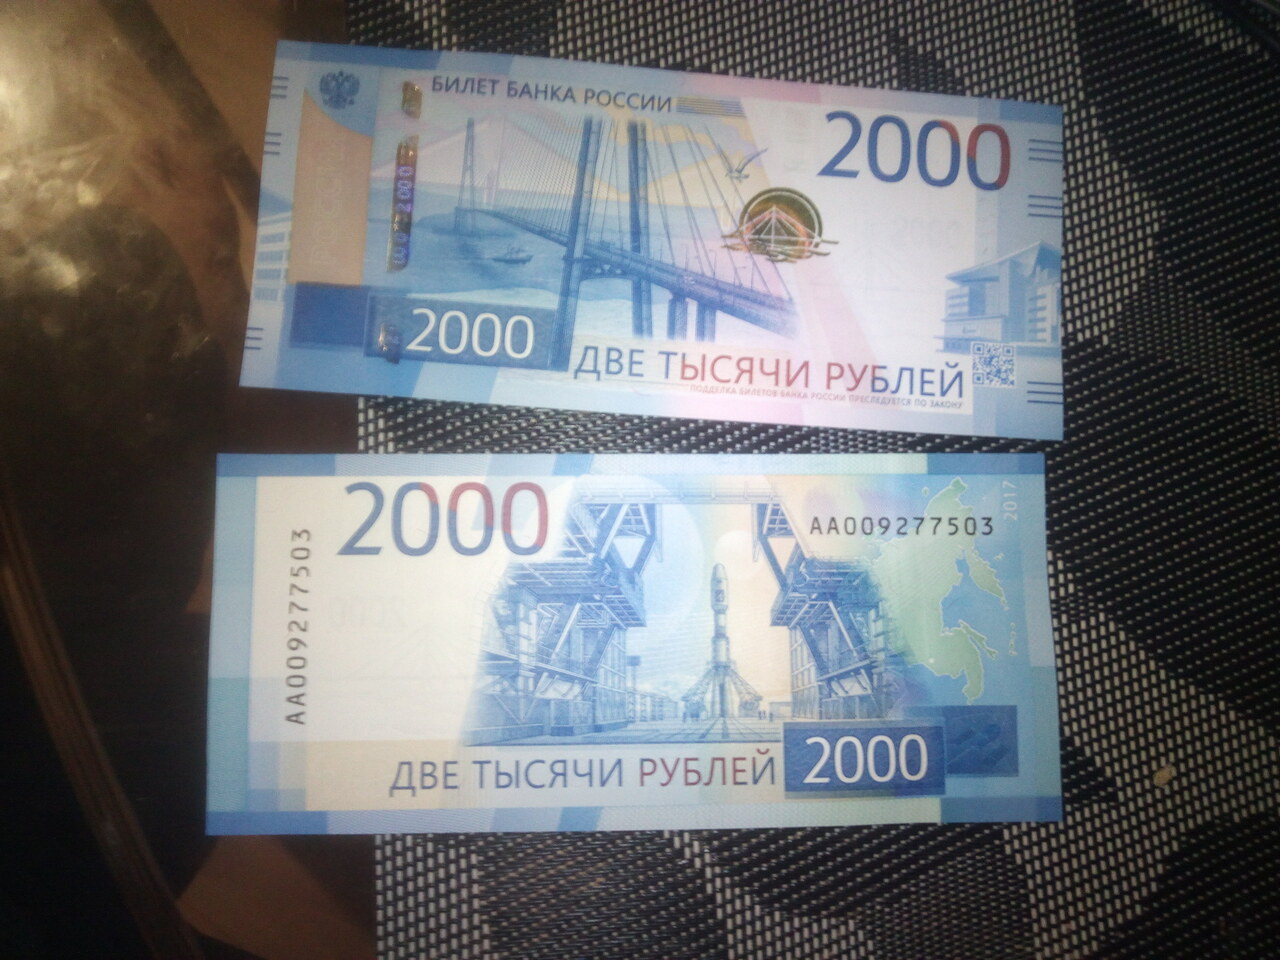 Купюра 2 руб. Купюра 2000 рублей. 1000 И 2000 рублей. Две тысячи рублей купюра. Банкнота 2000 руб.